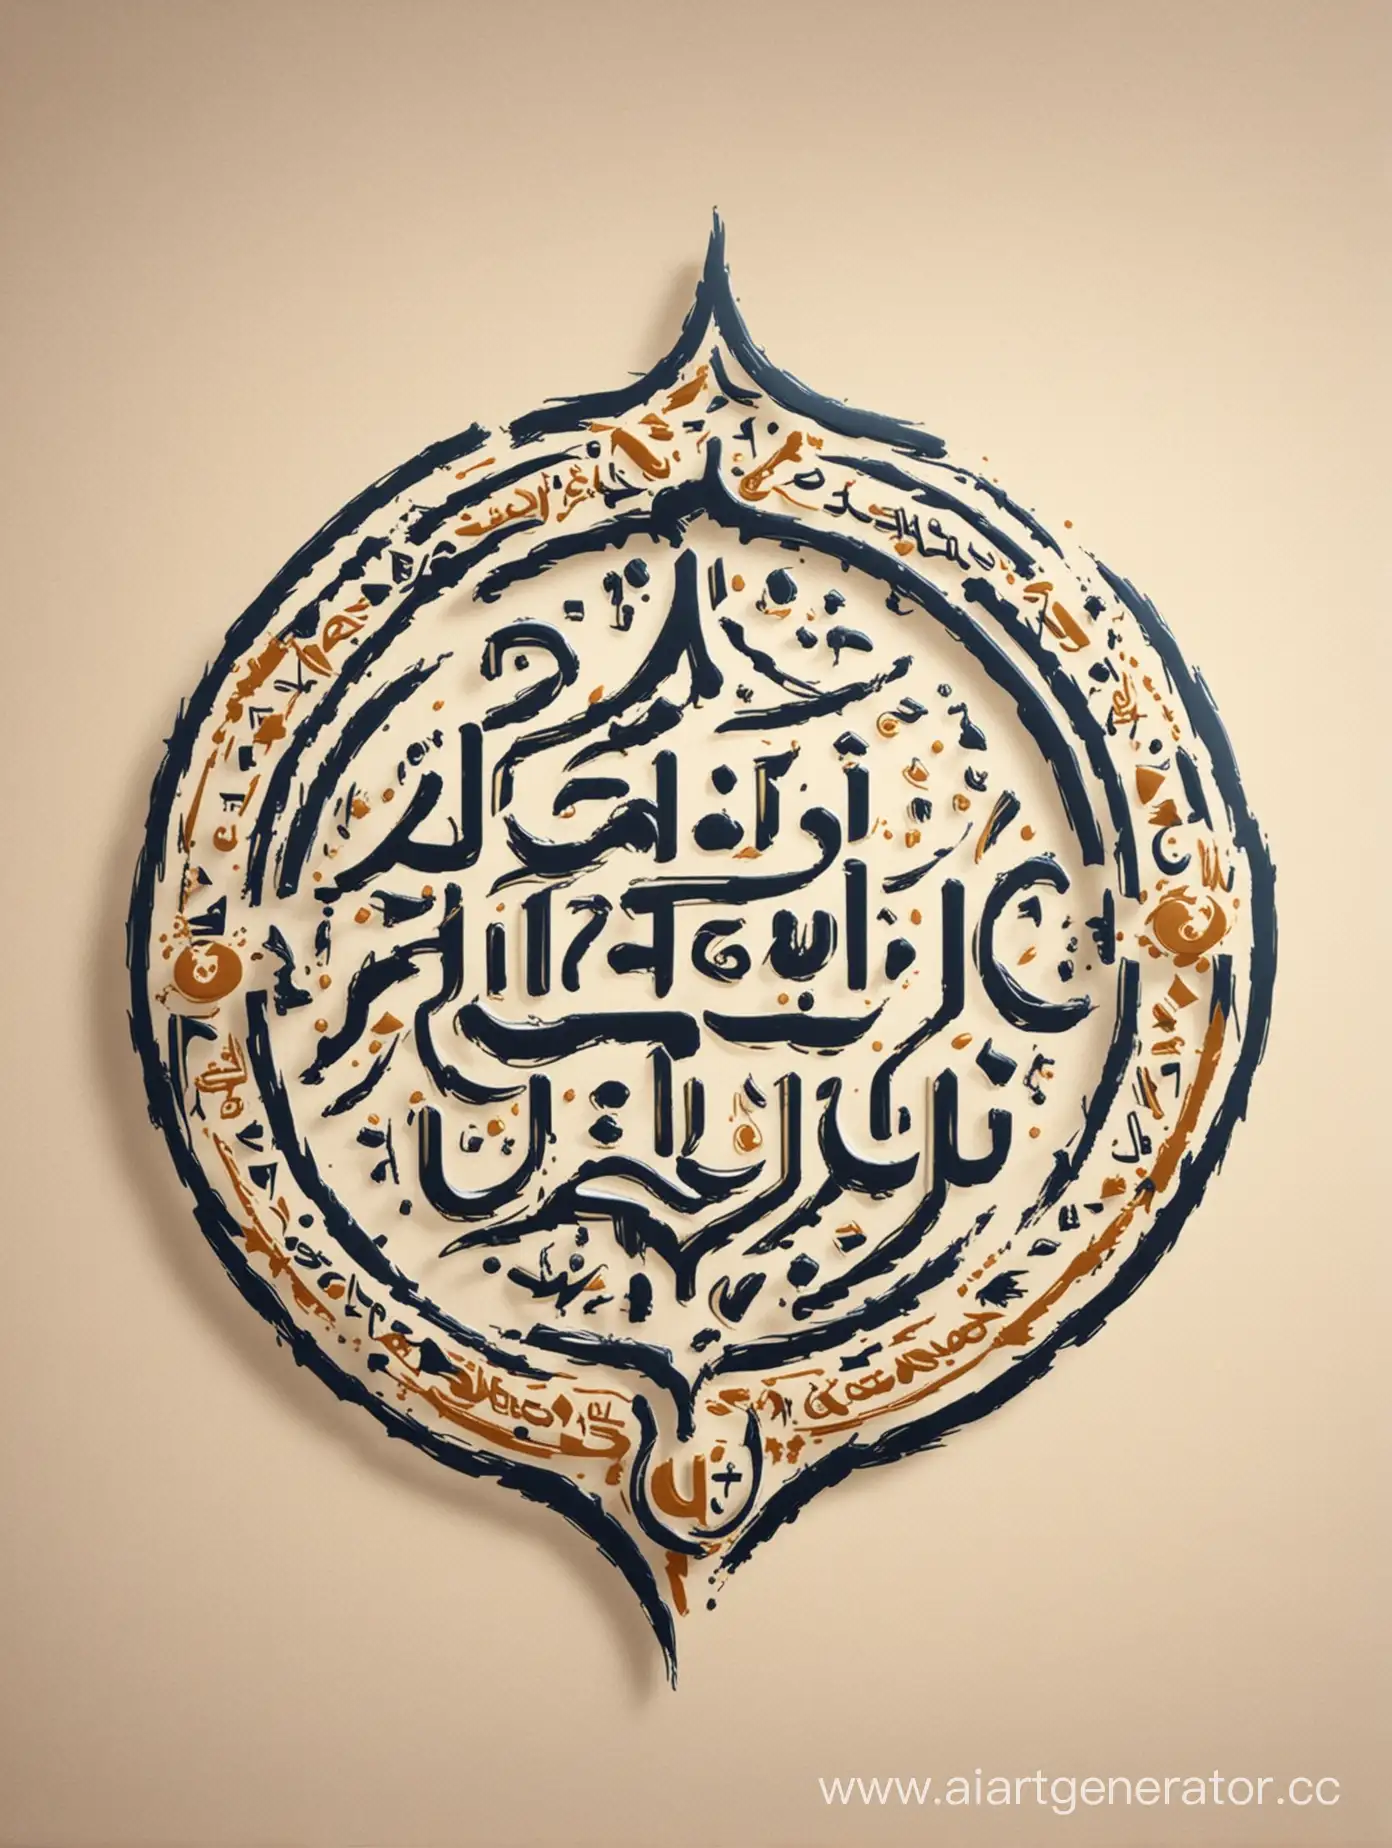 Логотип клуба по изучению арабского языка. Дизайн должен быть в современном стиле, но сохранять восточную стилистику